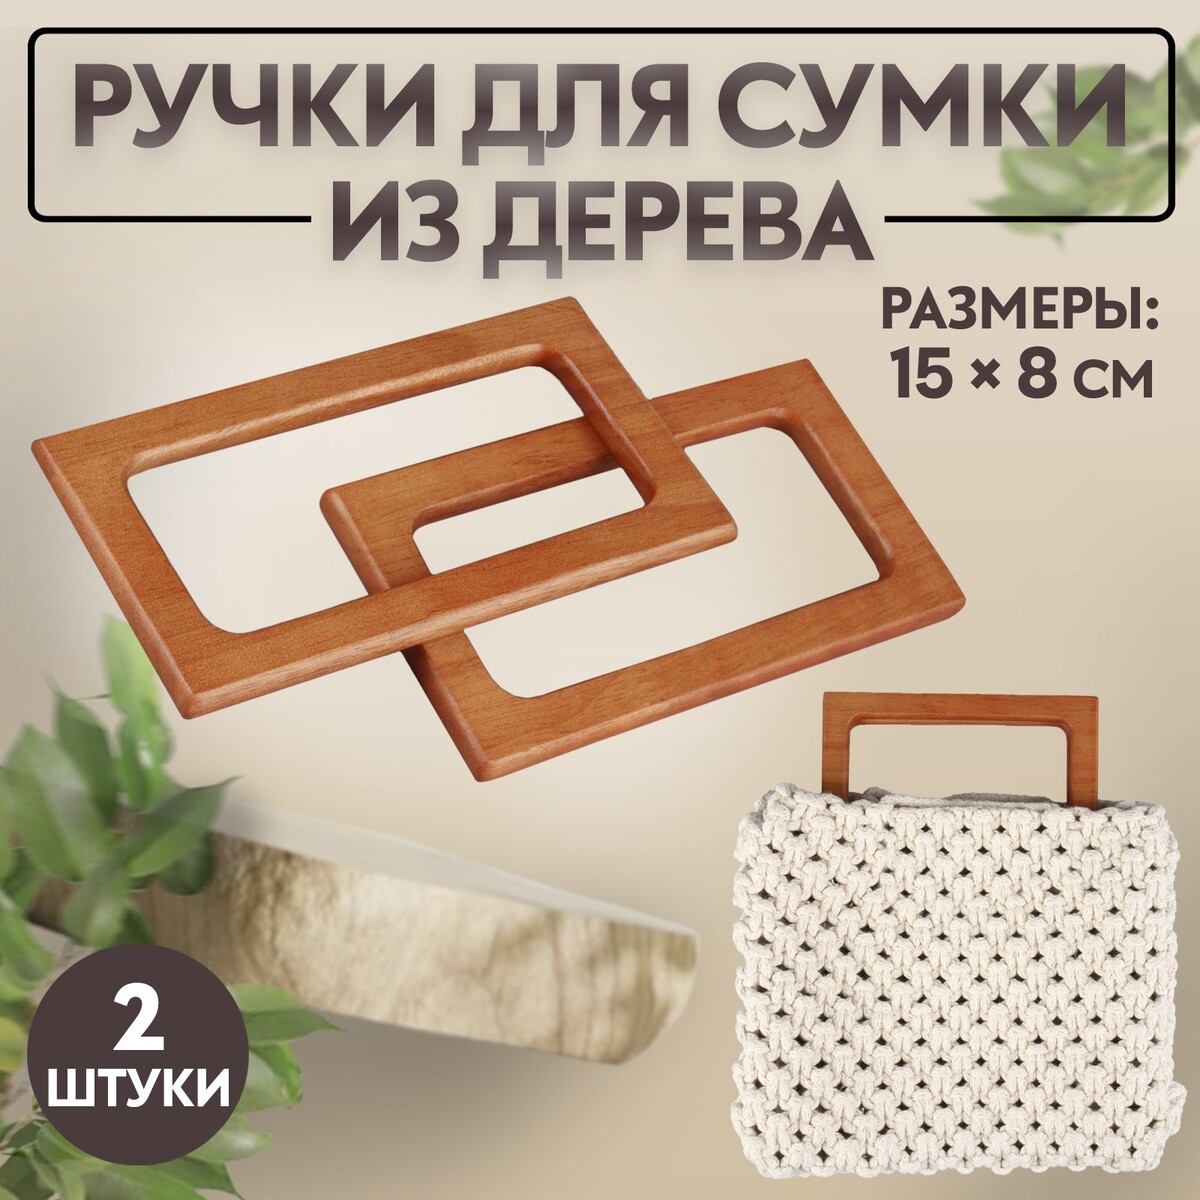 Ручки для сумки деревянные, 15 × 8 см, 2 шт, цвет светло-коричневый ручки для сумки 2 шт бамбук 17 × 13 15 5 × 11 5 см светло коричневый